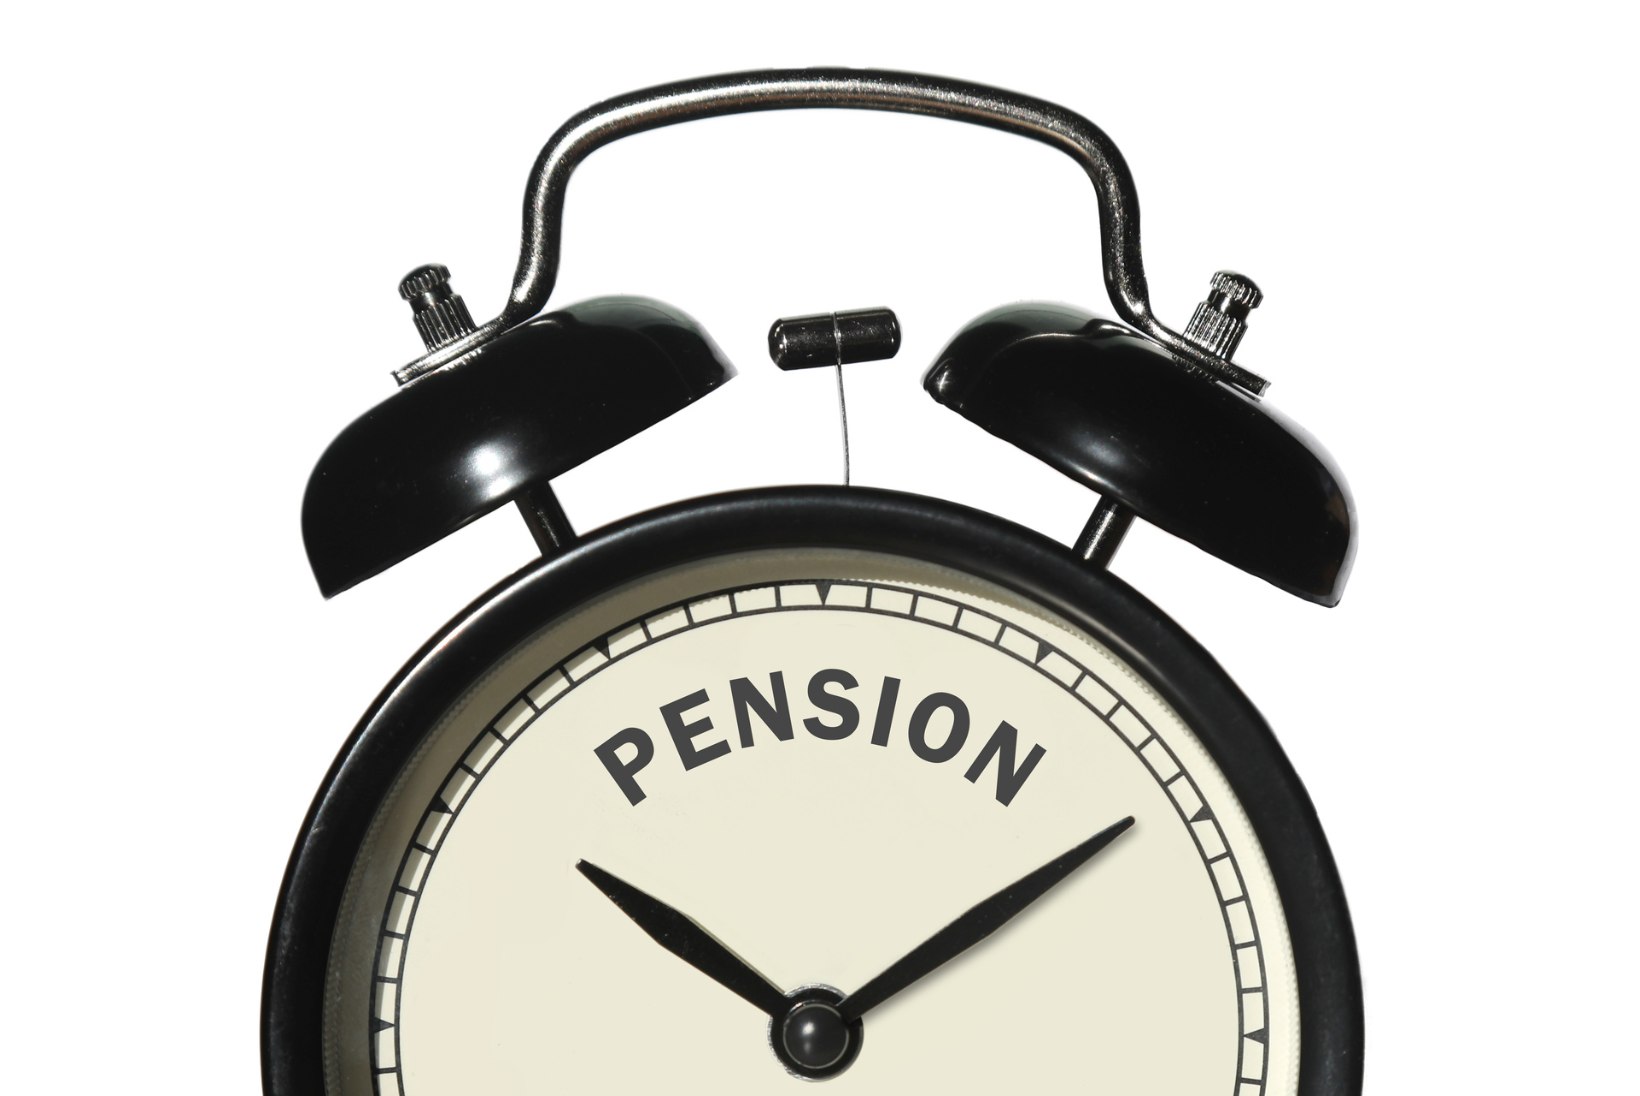 Pensionisüsteem selgeks! Millal pensionile jäädes võidad rahas kõige rohkem?